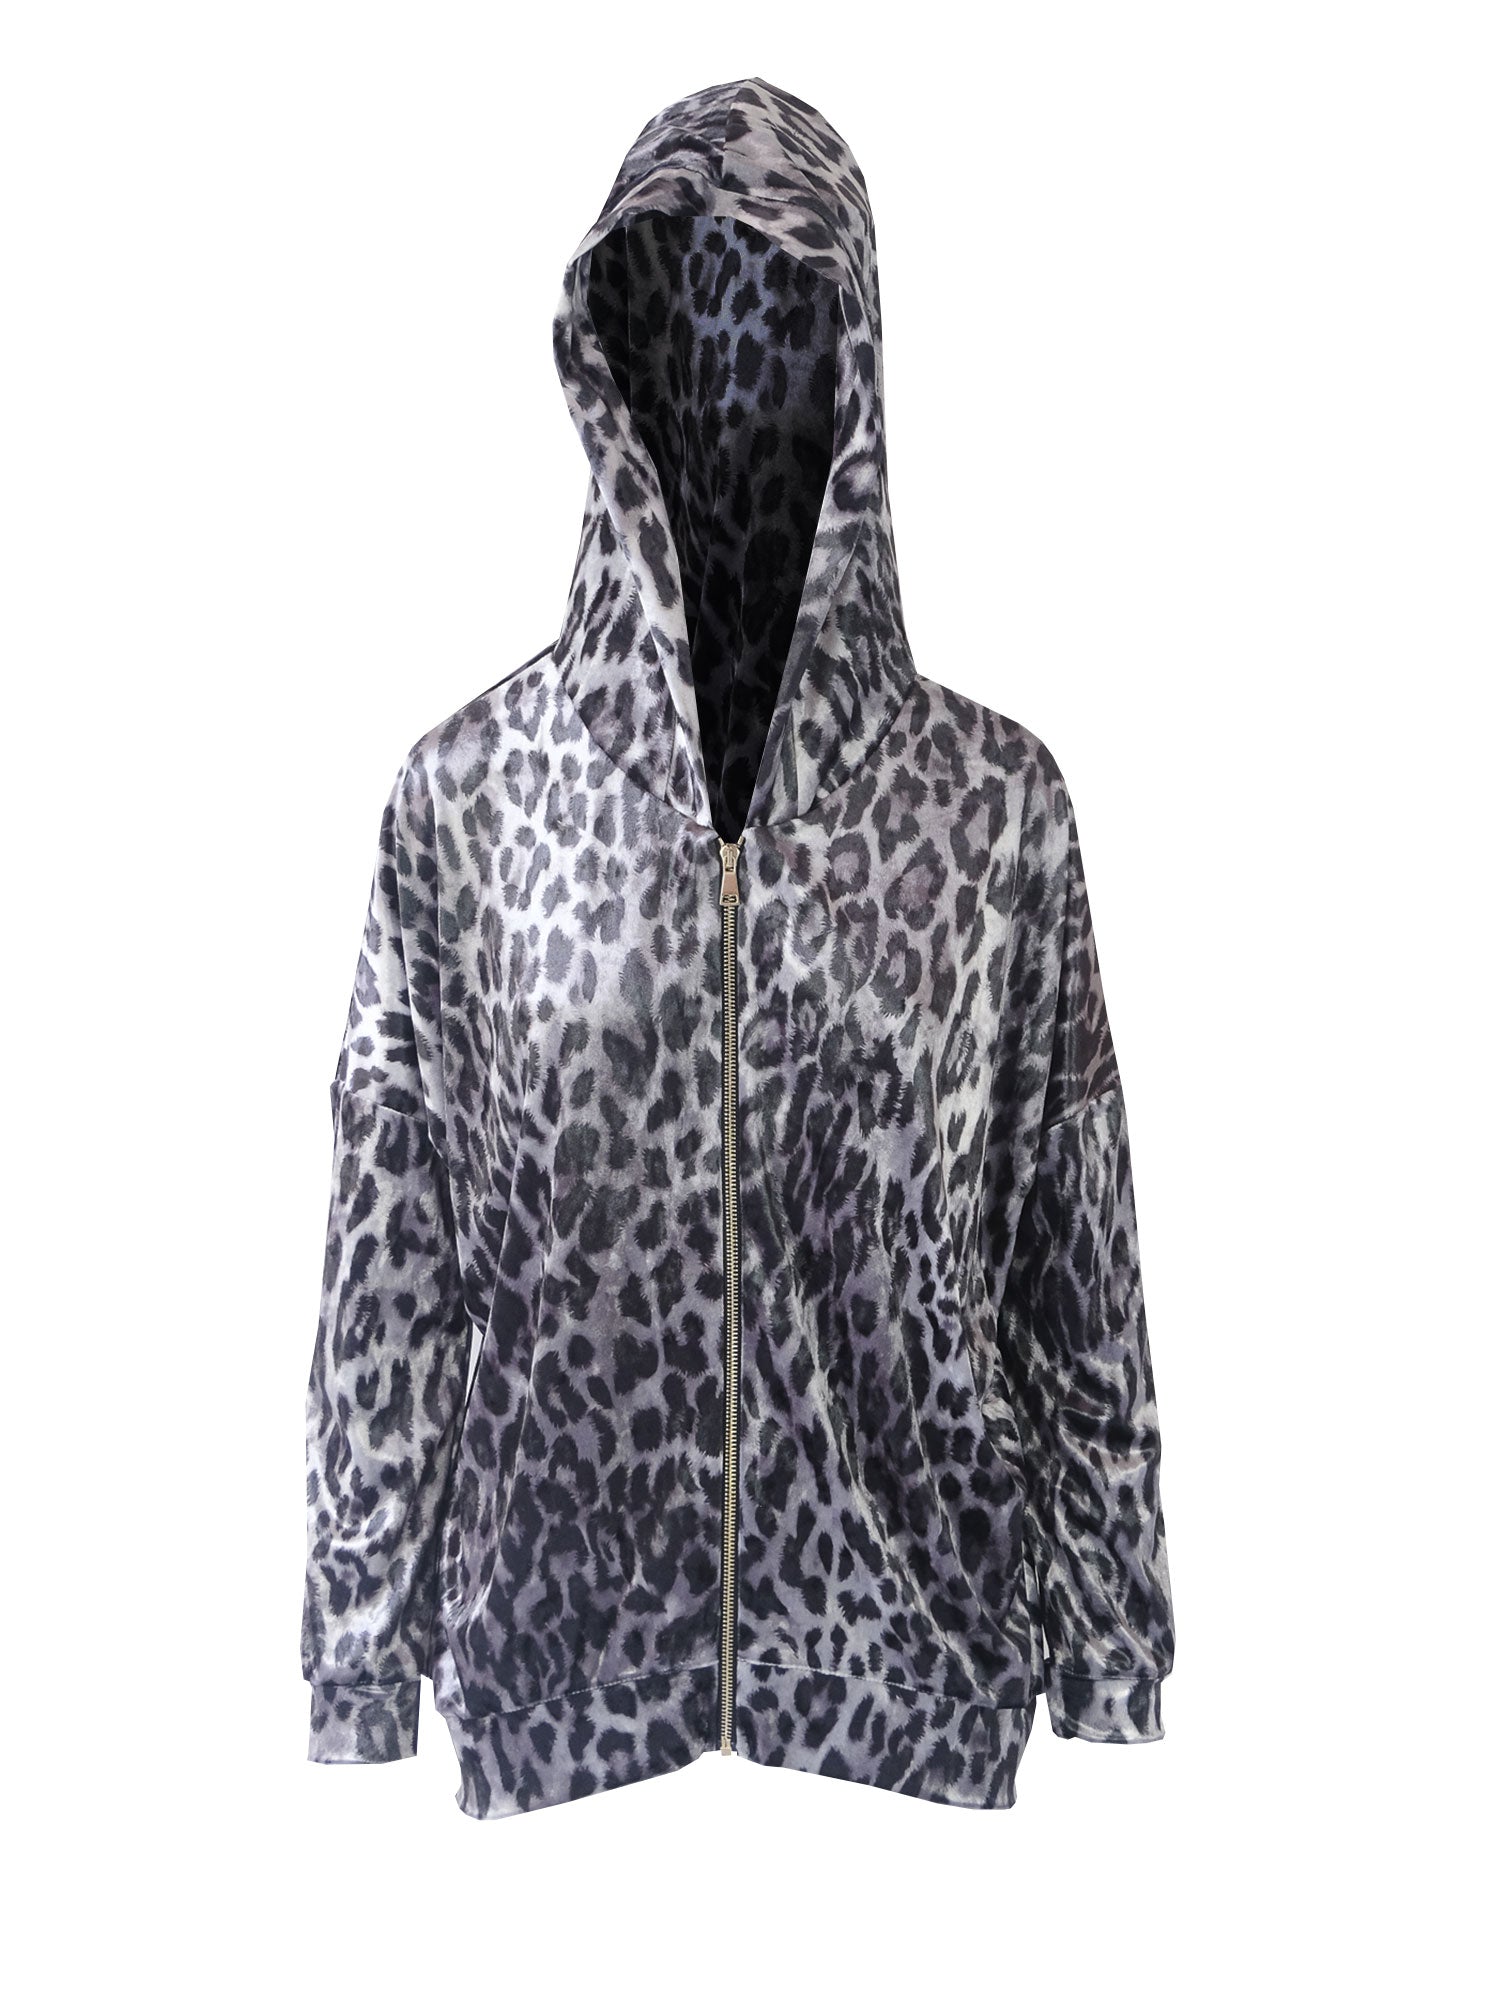 ADRIEN - grey animal print crushed velvet hoodie